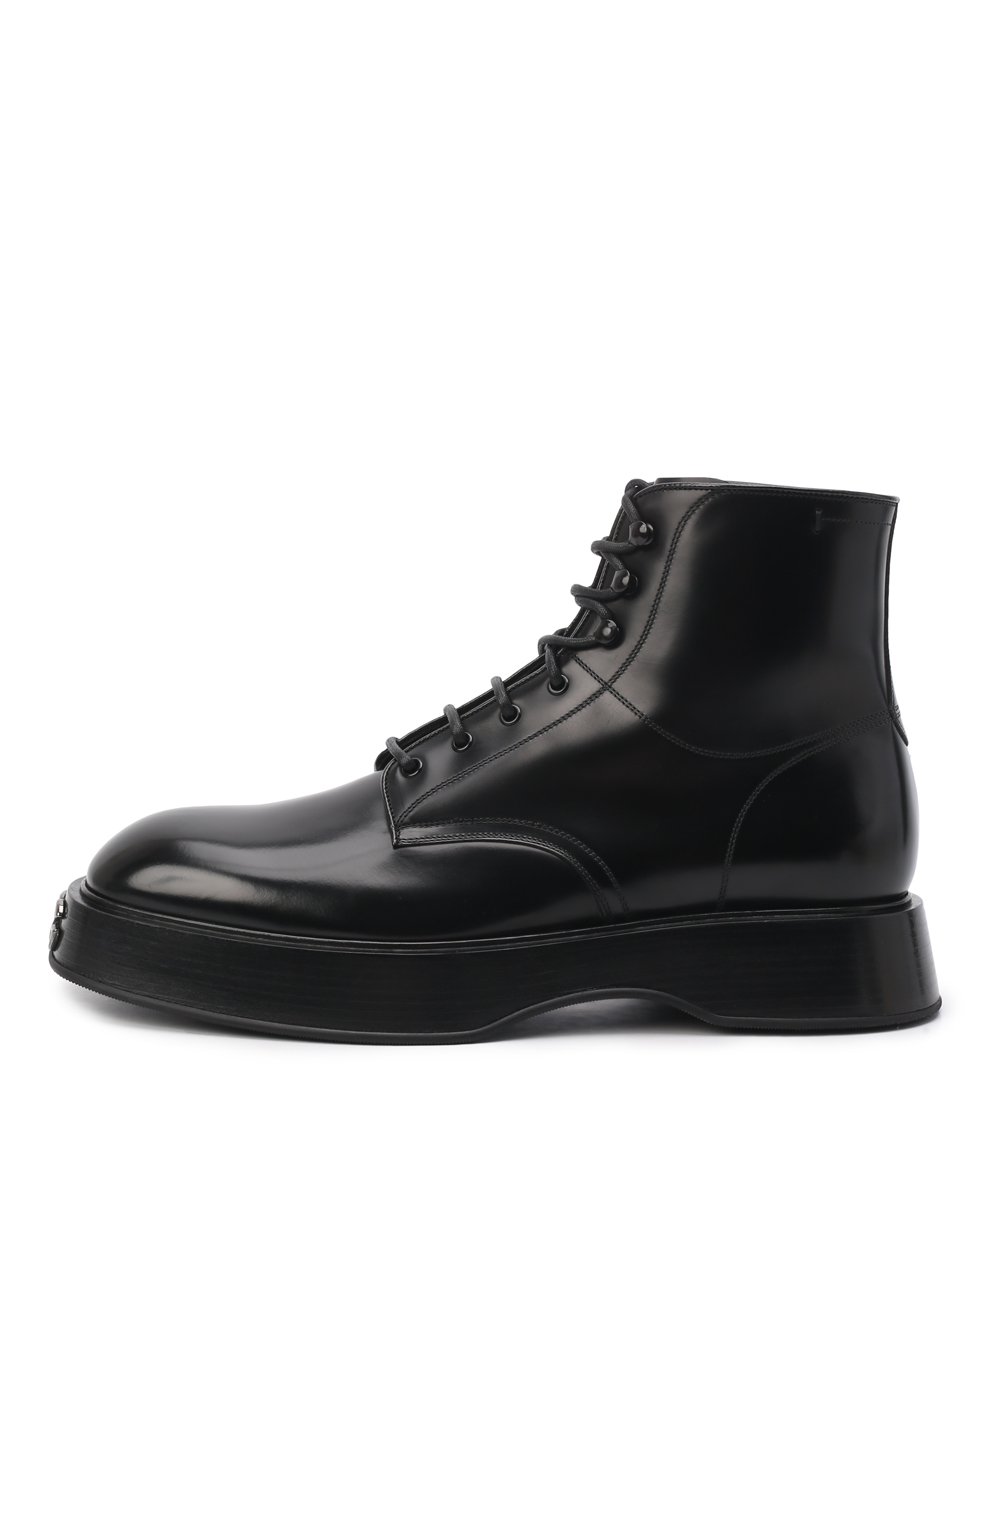 Мужские кожаные ботинки michelangelo DOLCE & GABBANA черного цвета, арт. A60419/A1203 | Фото 4 (Мужское Кросс-КТ: Ботинки-обувь, Байкеры-обувь; Материал внутренний: Натуральная кожа; Материал утеплителя: Без утеплителя; Подошва: Массивная; Длина стельки: 24,5, 25,3, 25,7, 26,1, 26,5, 26,9, 27,3, 27,7, 28,1, 28,5, 28,9, 29,3, 30,1)